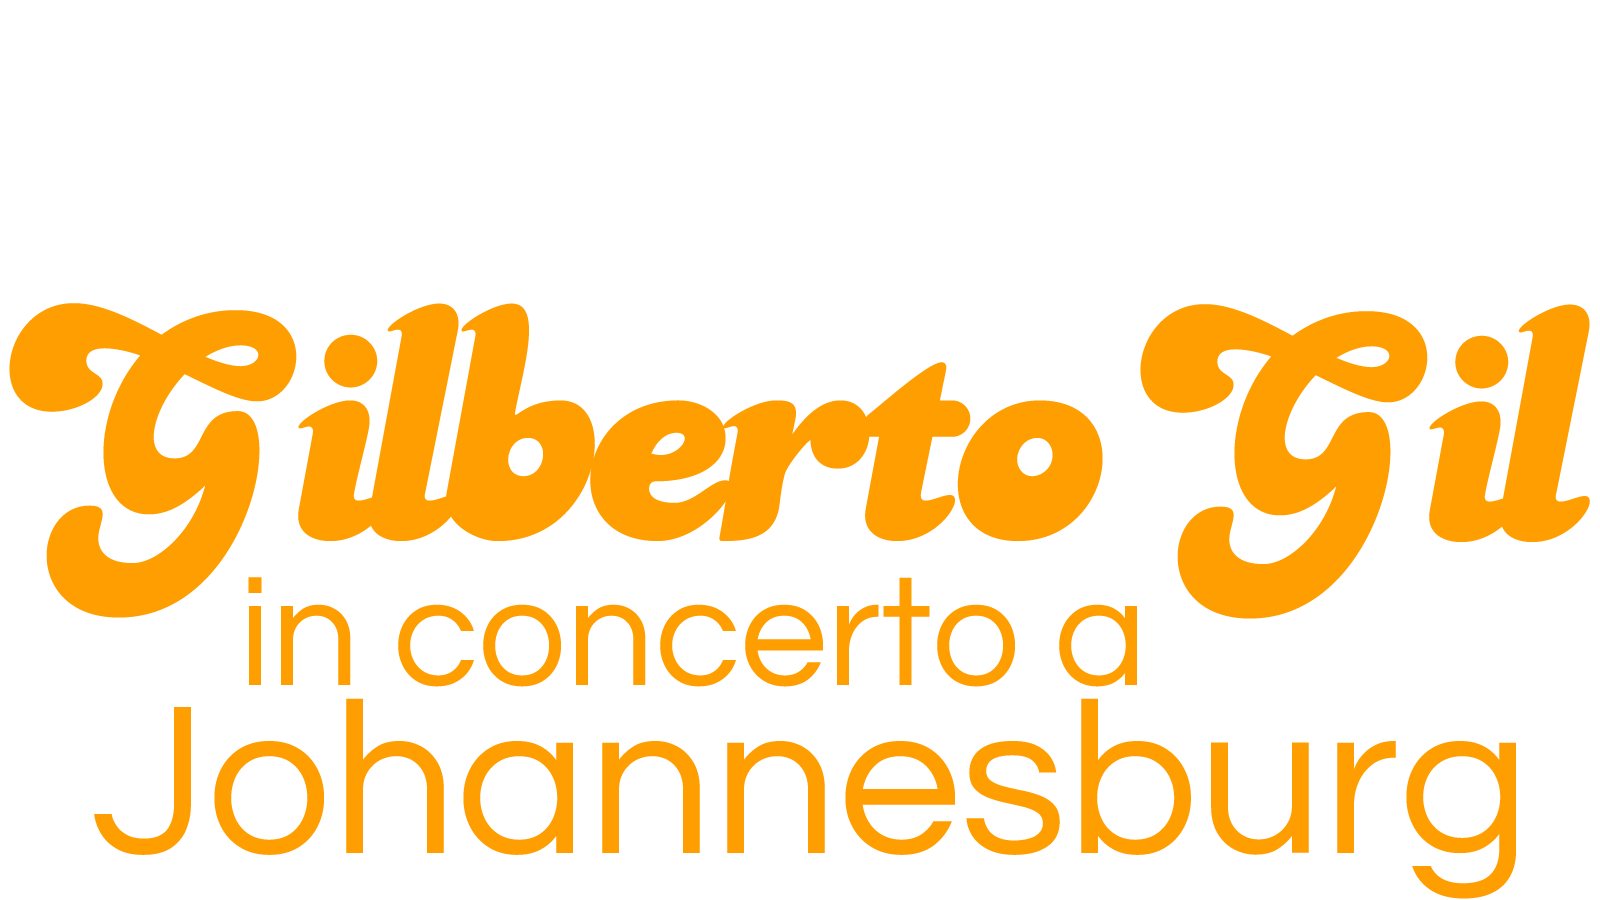 Gilberto Gill in concerto a Johannesburg